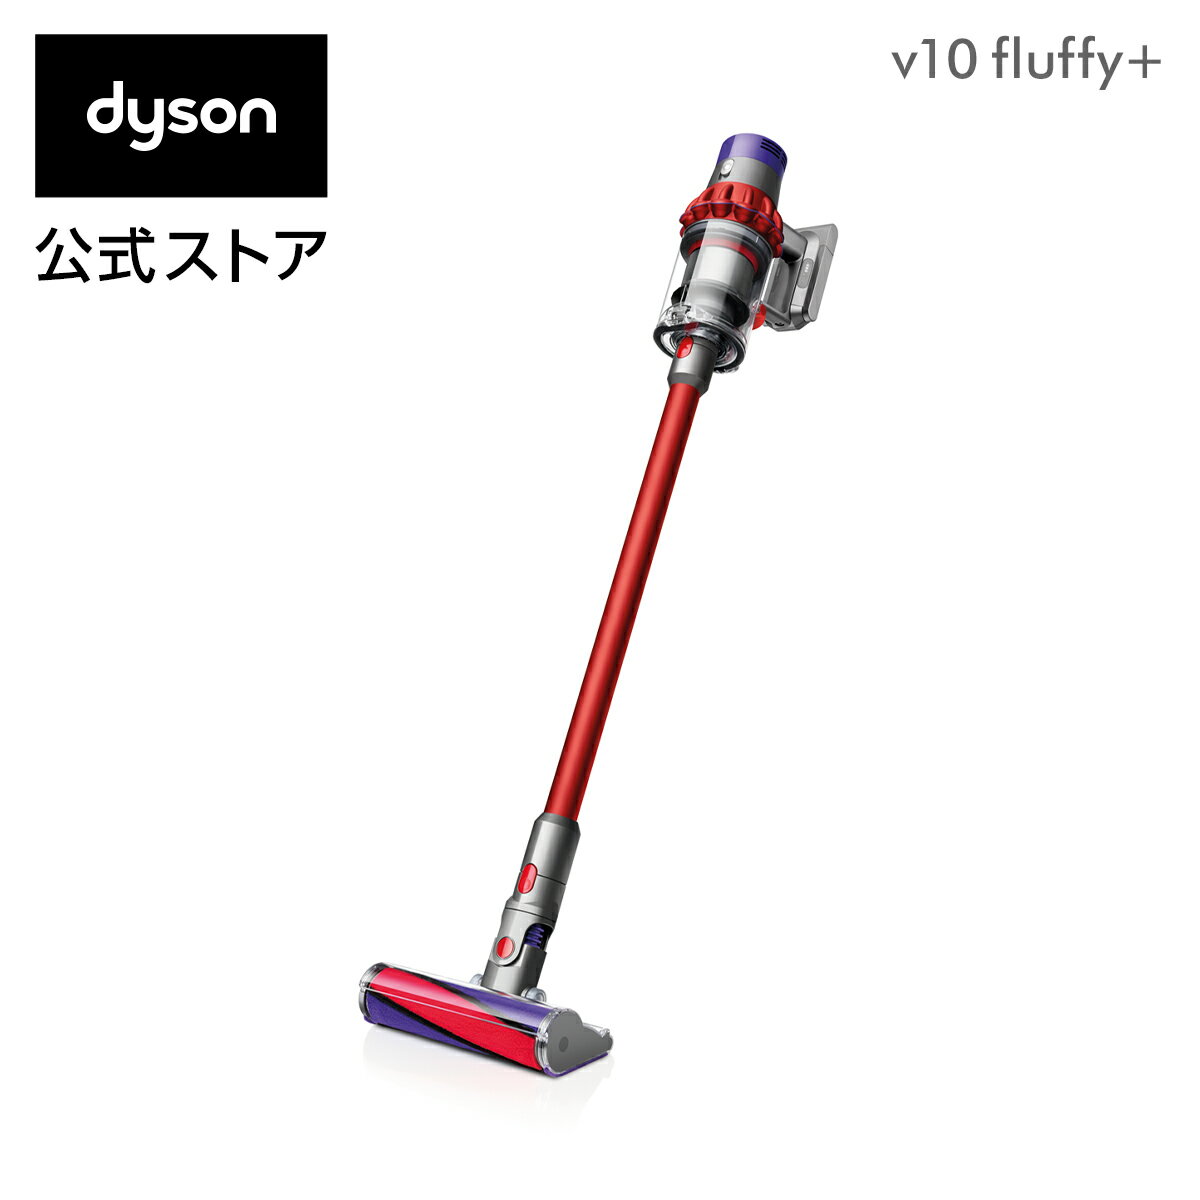 【数量限定】ダイソン Dyson Cyclone V10 Fluffy+ サイクロン式 コードレス掃除機 dyson SV12FFCOM 2018年モデルの写真